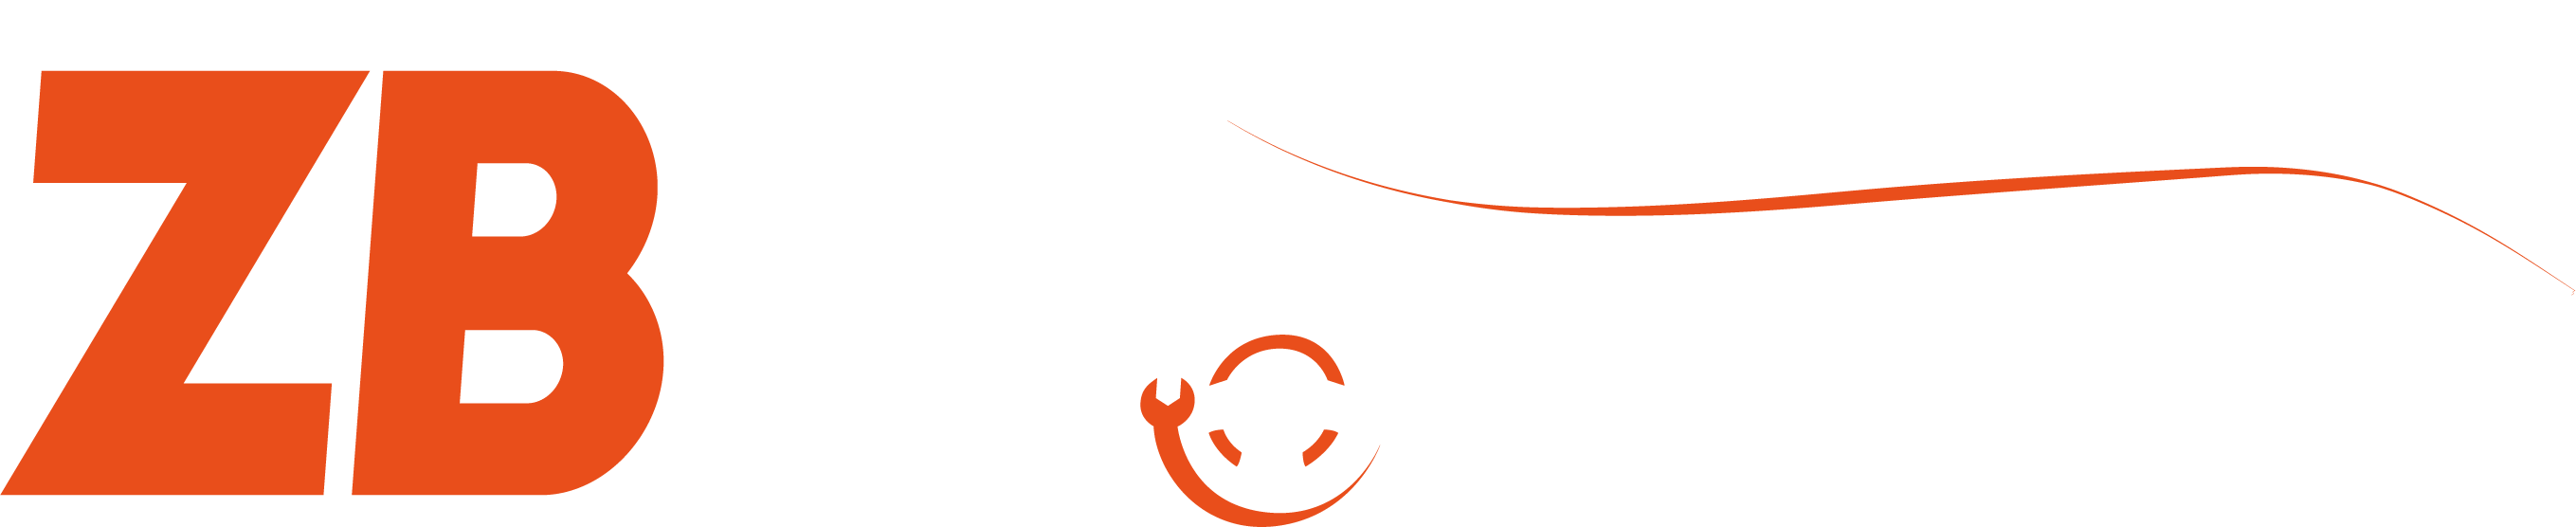 ZB Autotapizado Logo